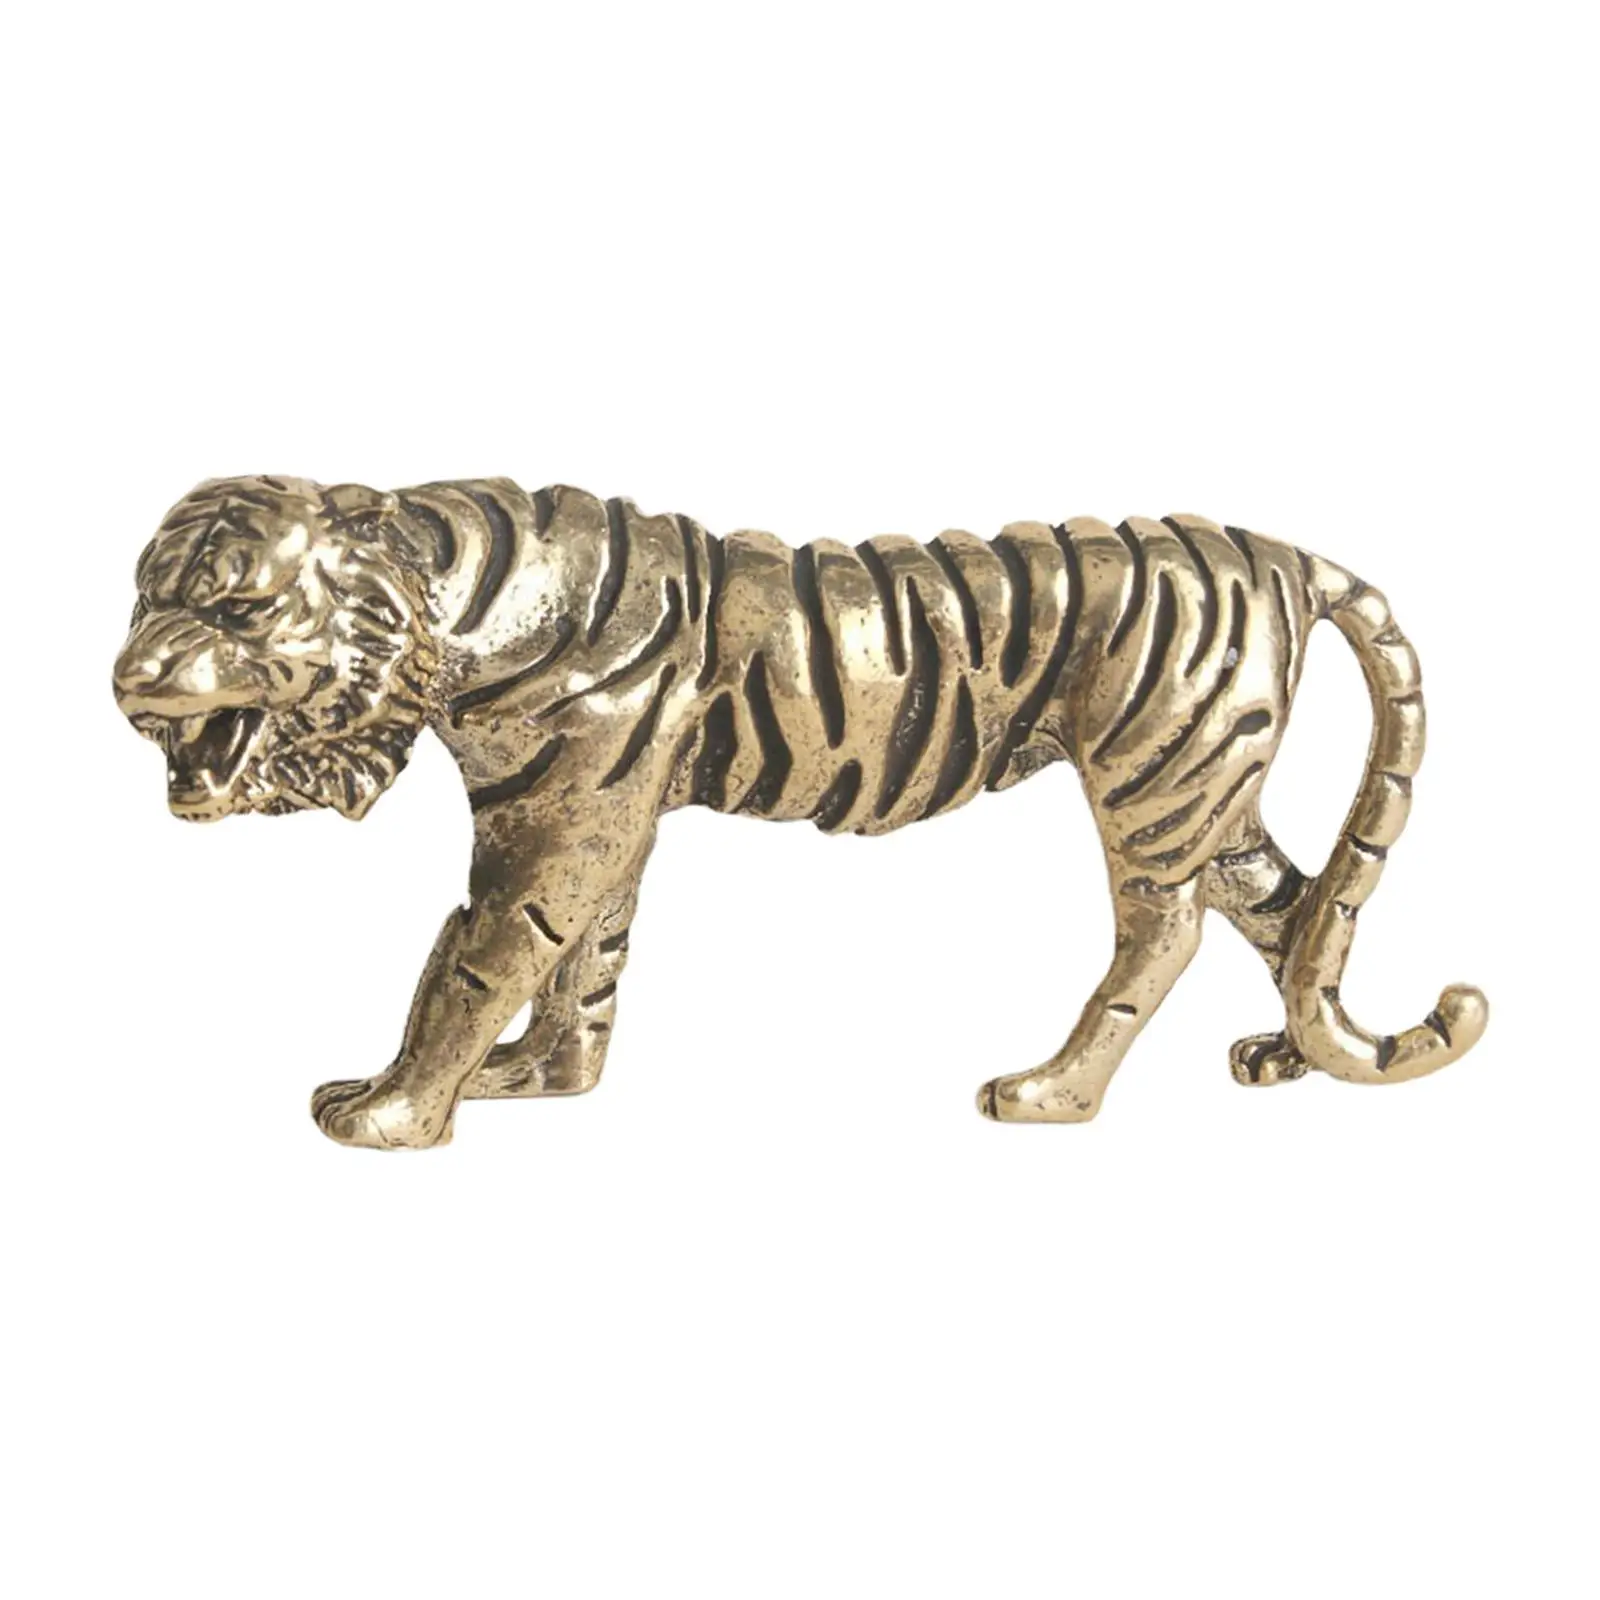 Коллекционная медная фигурка тигра, Ретро Бизнес-подарок, мини-скульптуры тигра для книжной полки, письменного стола, домашней столовой